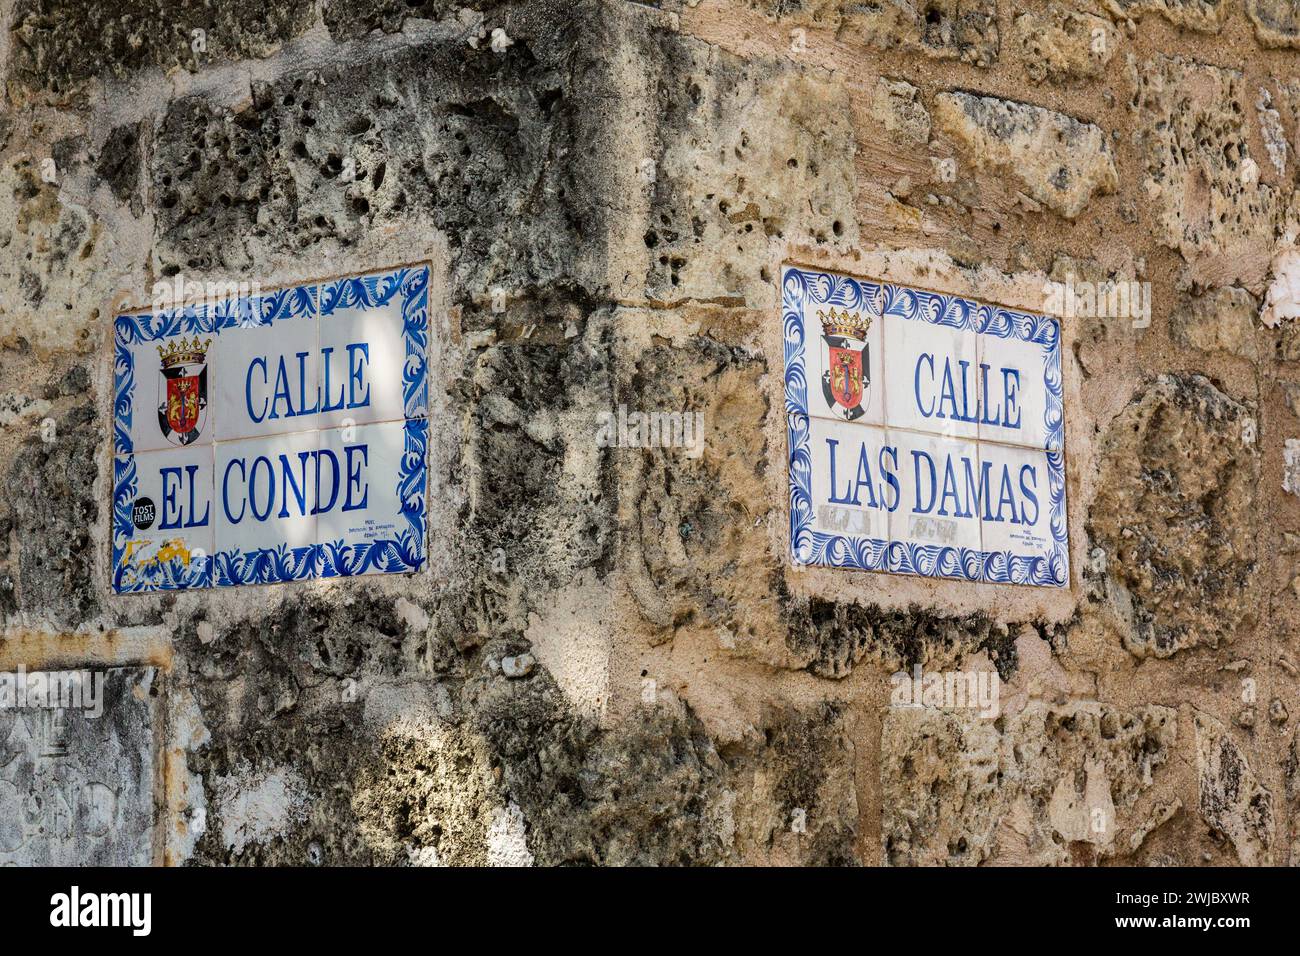 Sreet signe à l'angle de Calle El Conde et Calle Las Damas dans la ville coloniale de Santo Domingo, République dominicaine. Cet ancien bâtiment colonial Banque D'Images